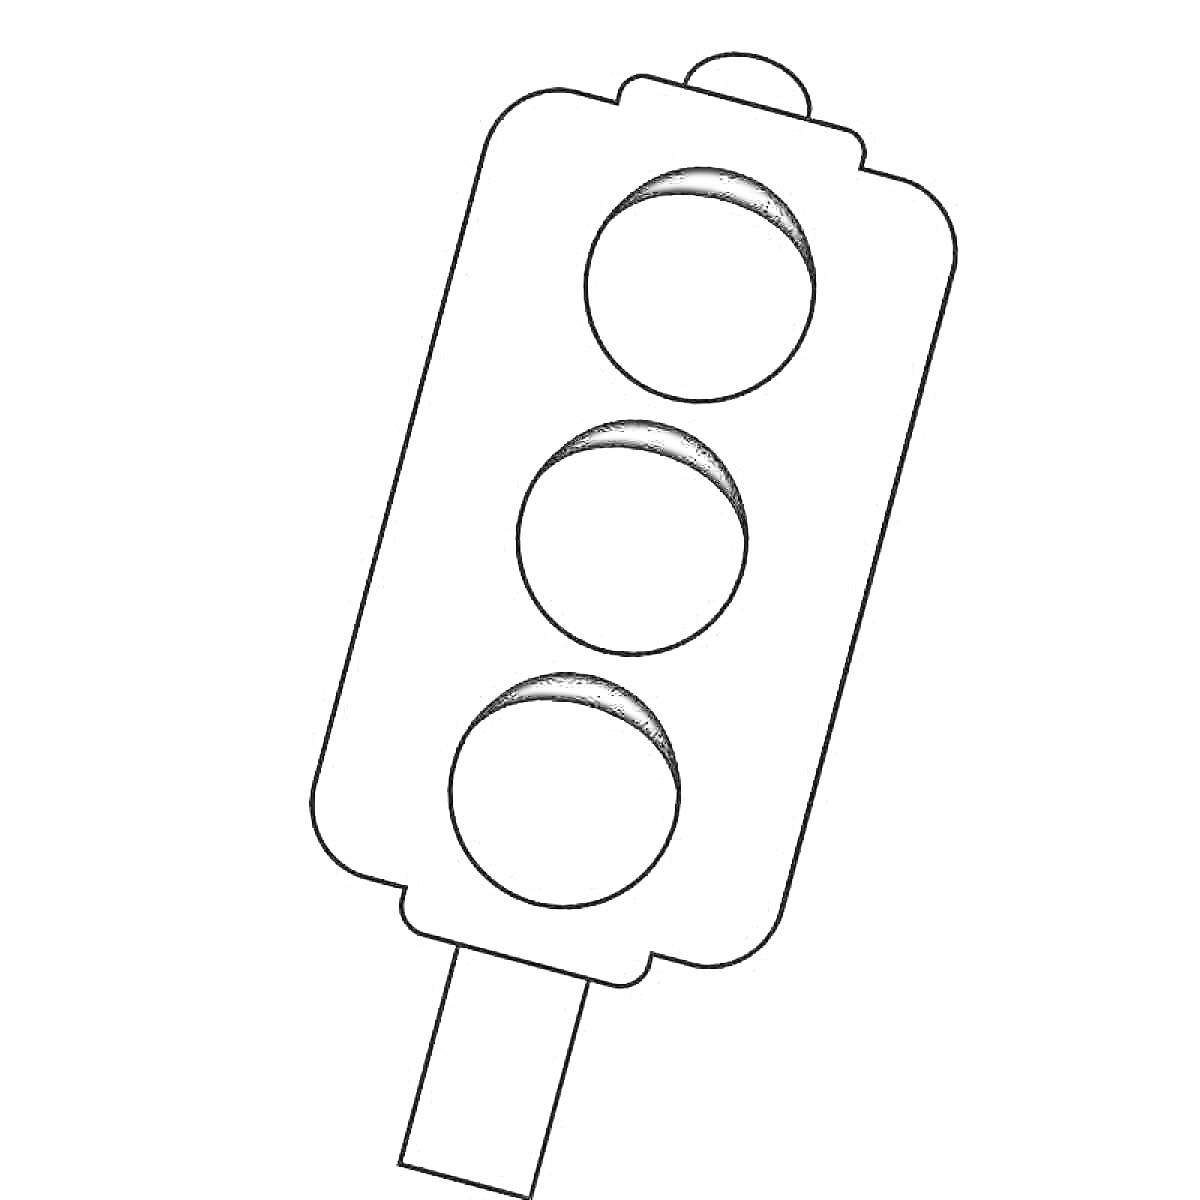 Раскраска Раскраска с изображением светофора с тремя круглыми сигналами